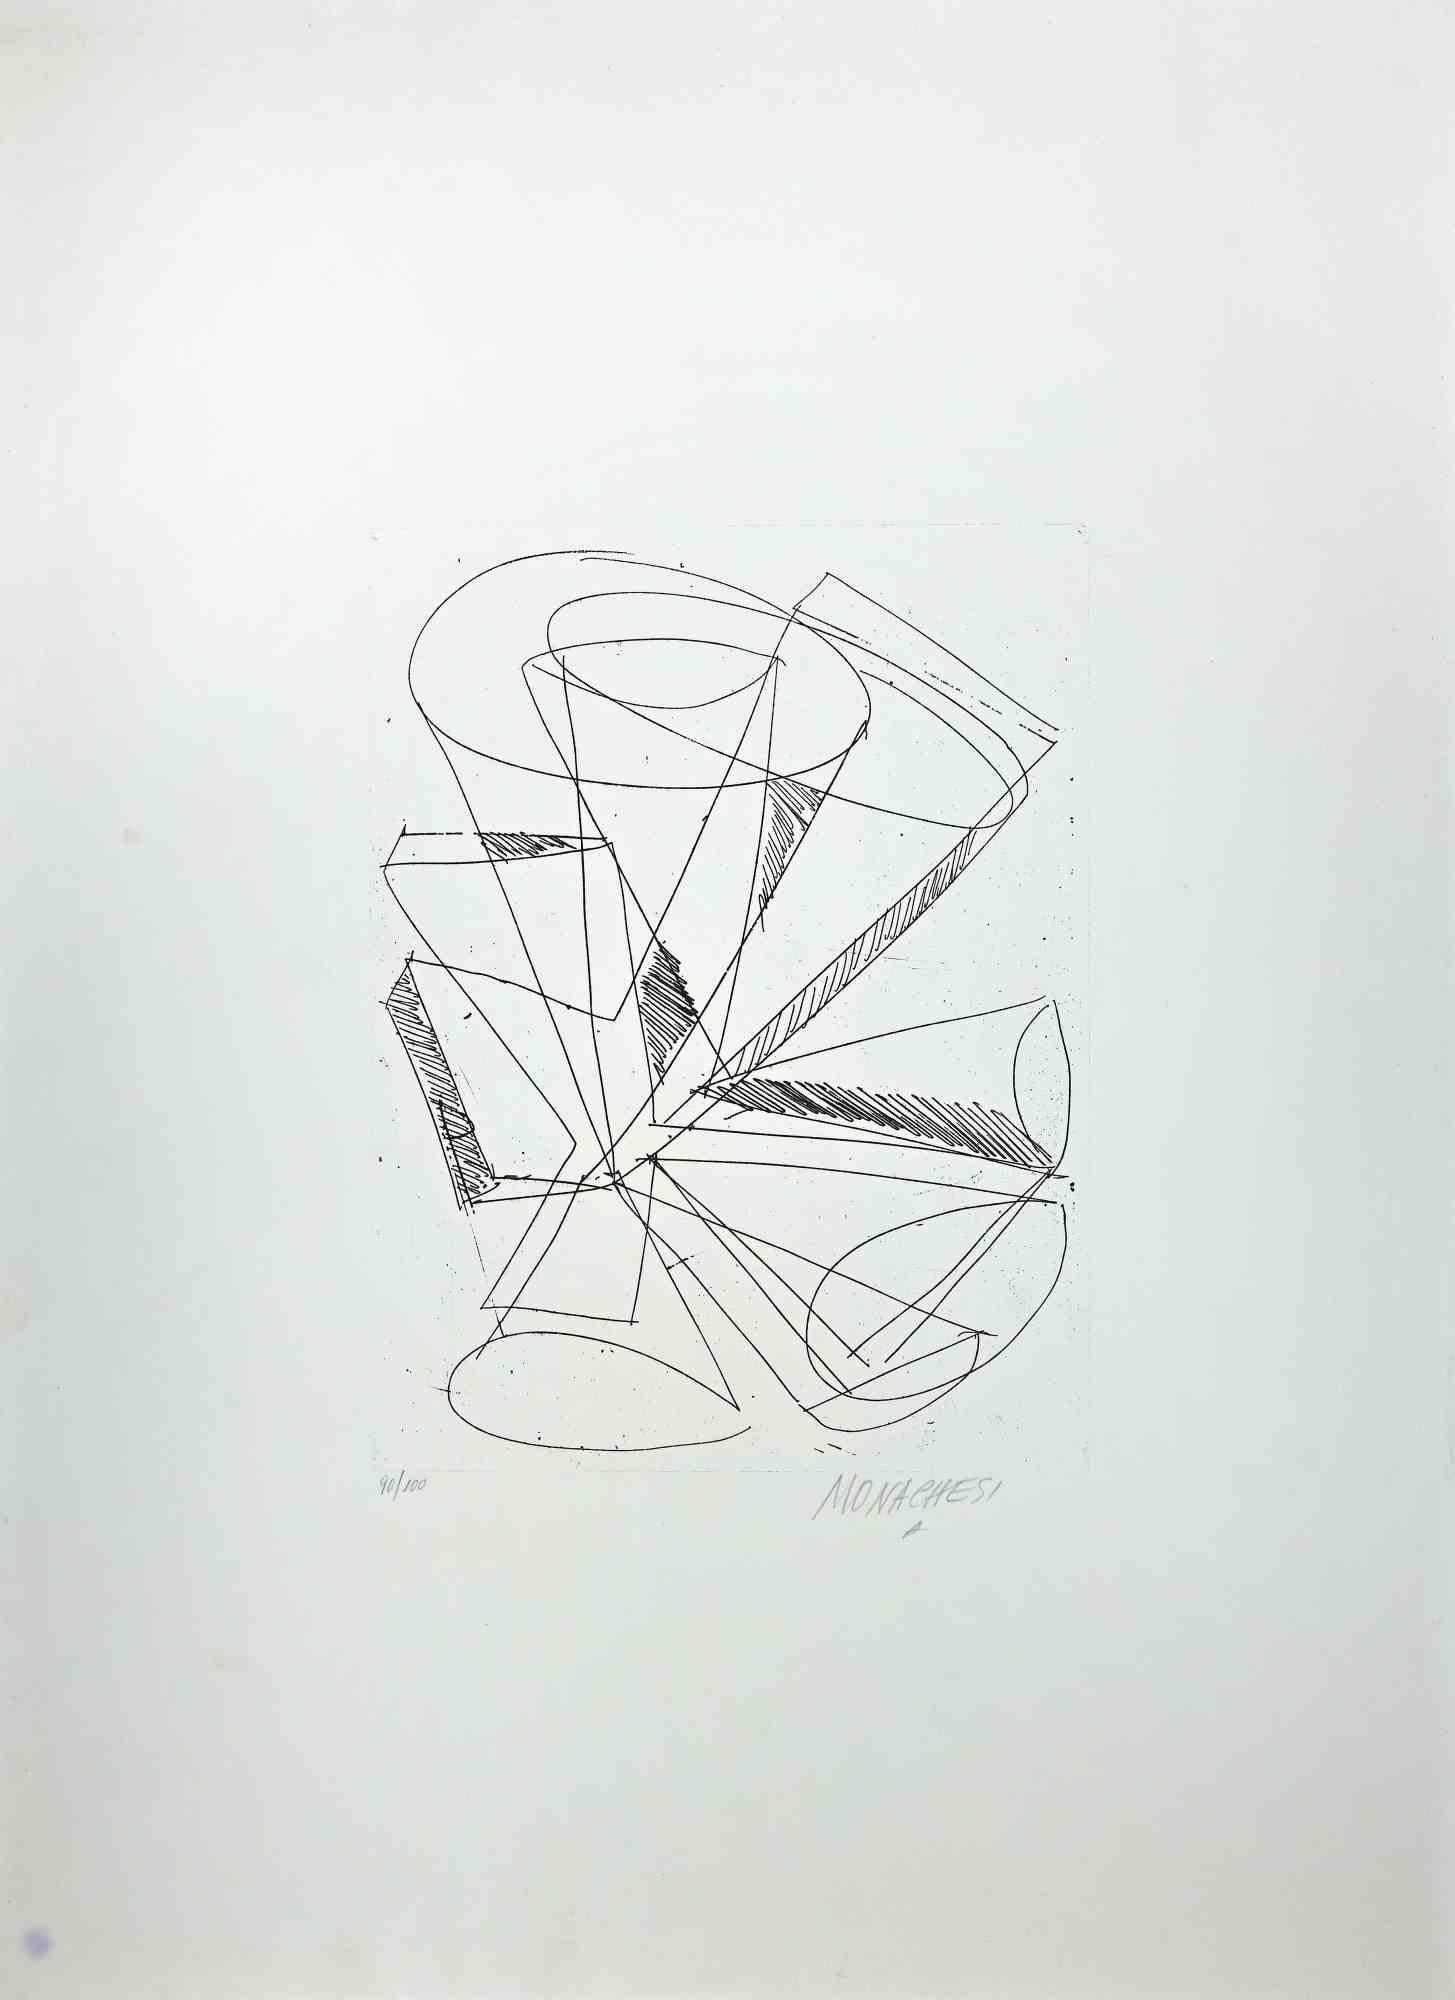 La composition géométrique abstraite est une gravure originale en noir et blanc réalisée par Sante Monachesi dans les années 1970.

Signé à la main au crayon par l'artiste en bas à droite. Numéroté, édition de 90/100 tirages.

Bon état, à